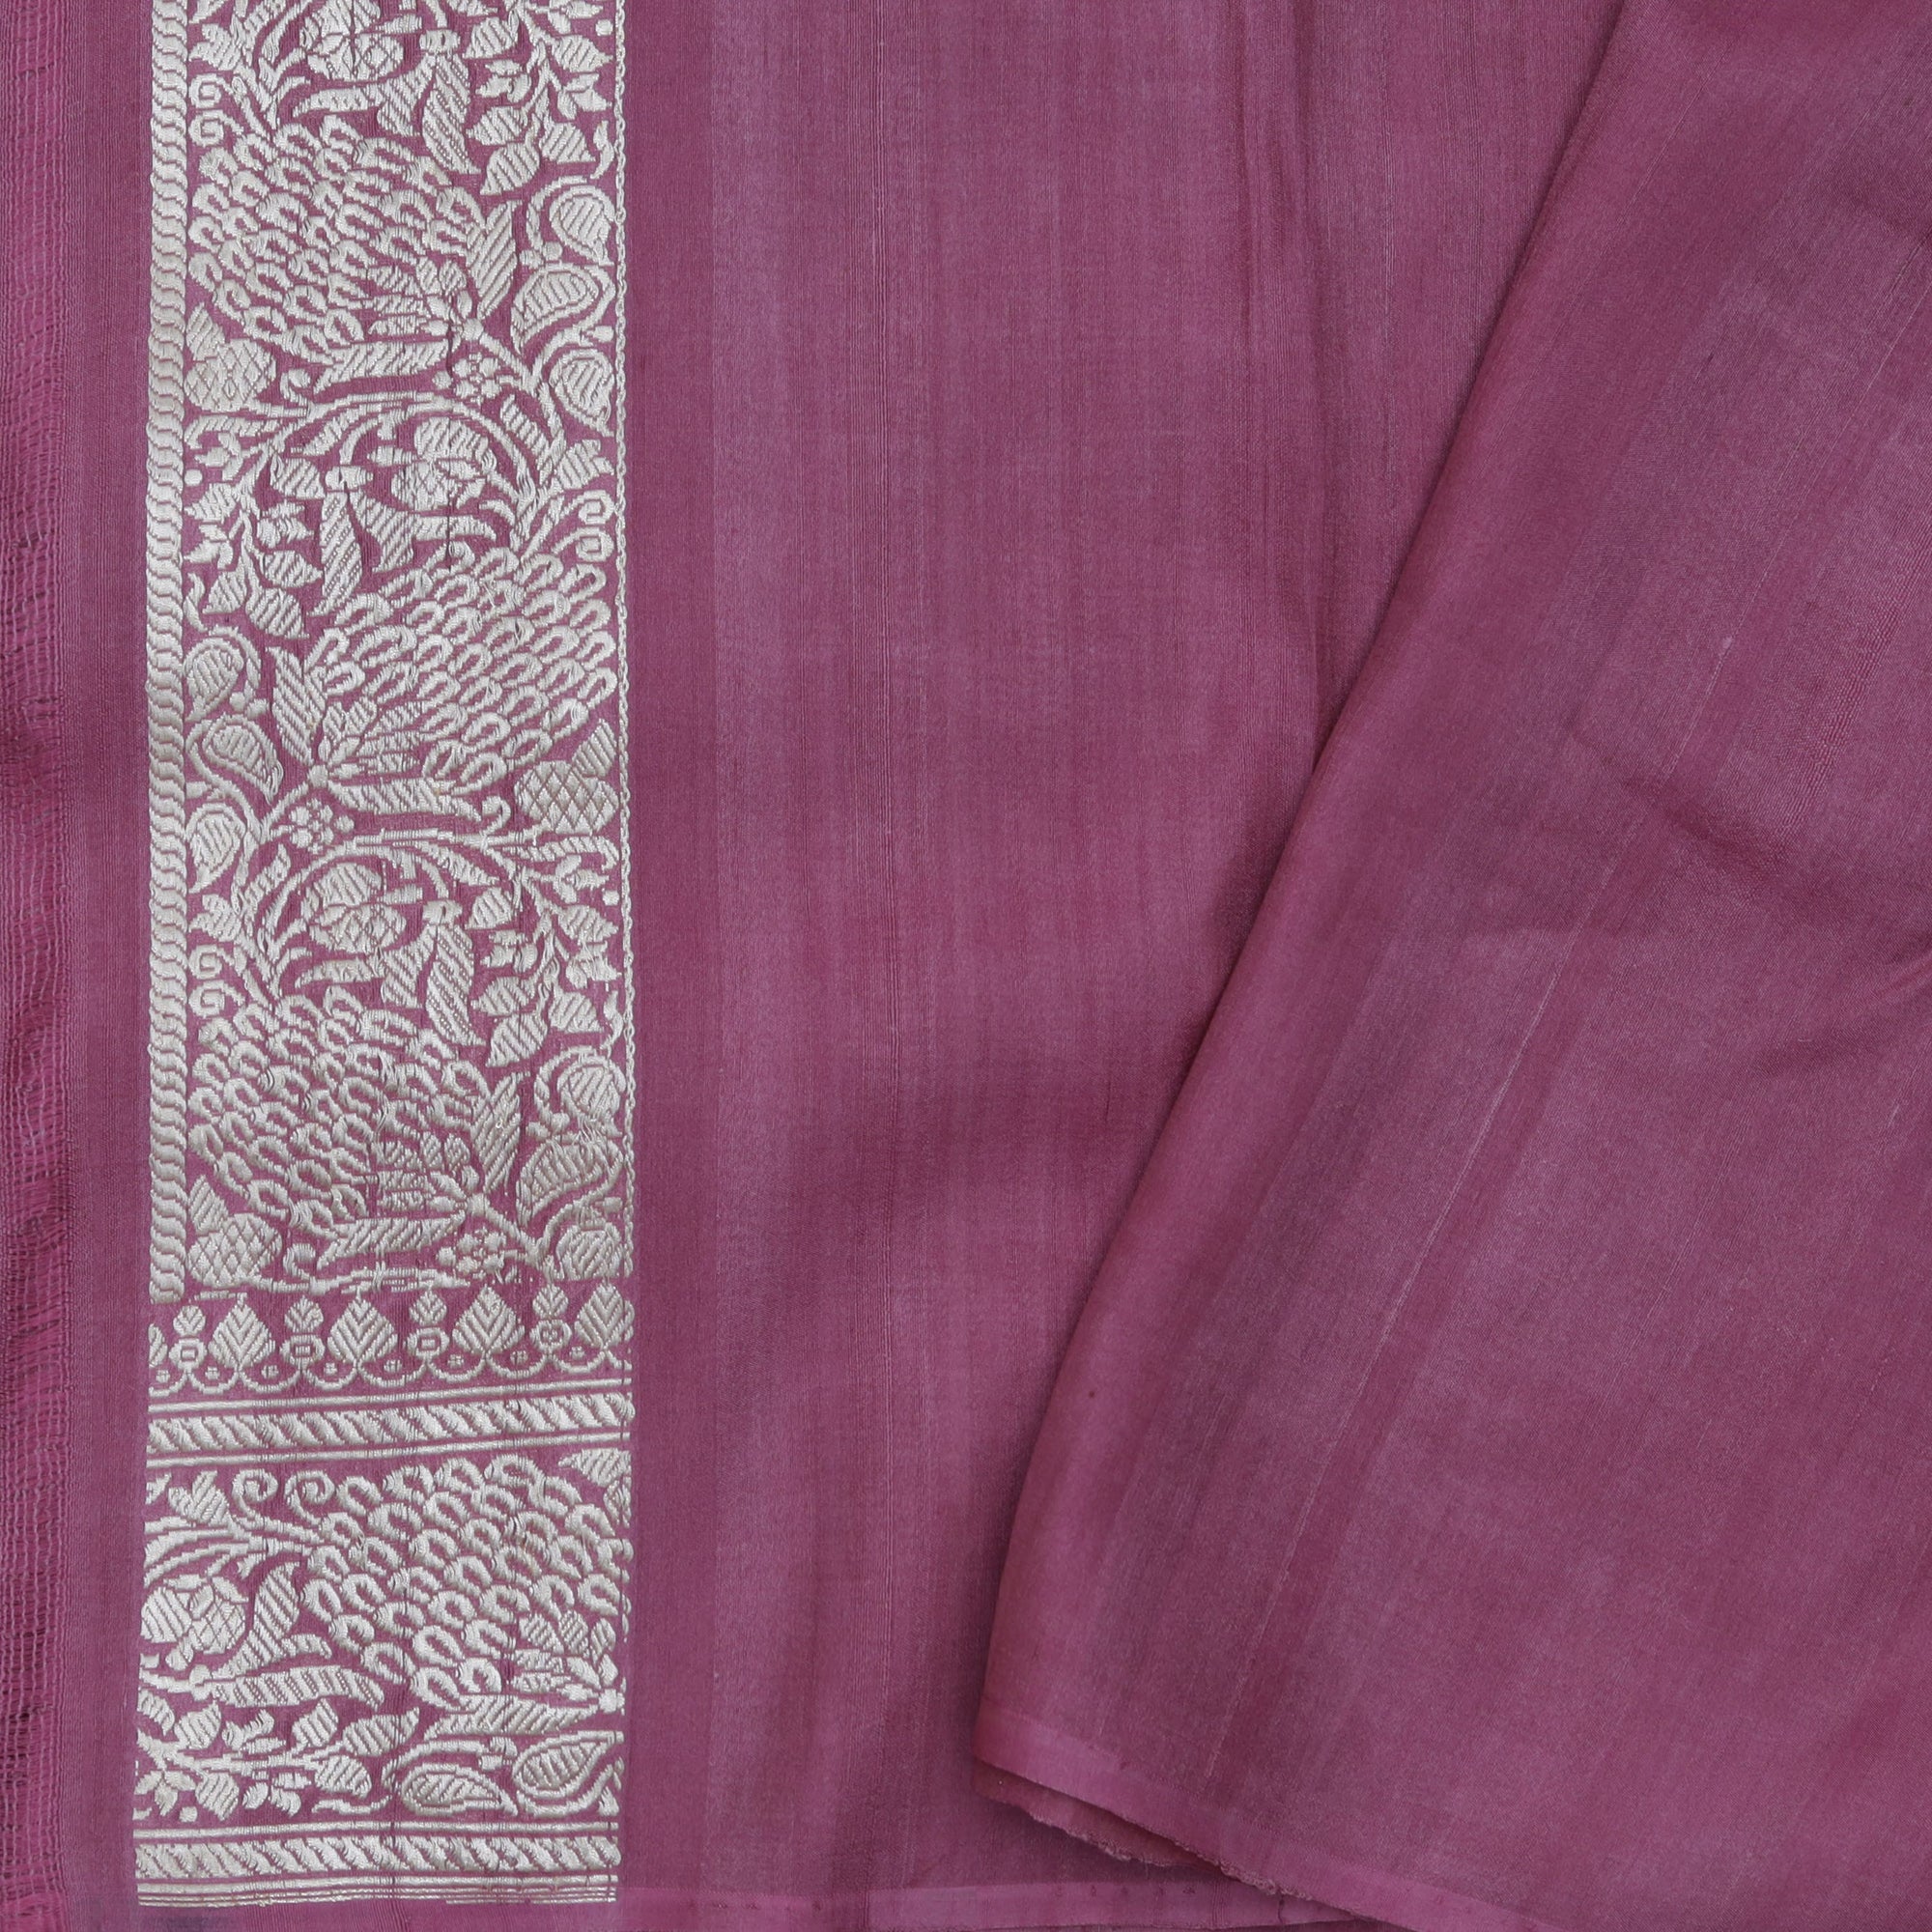 Dark Pink Tussar Jamdani Saree With Floral Weaving